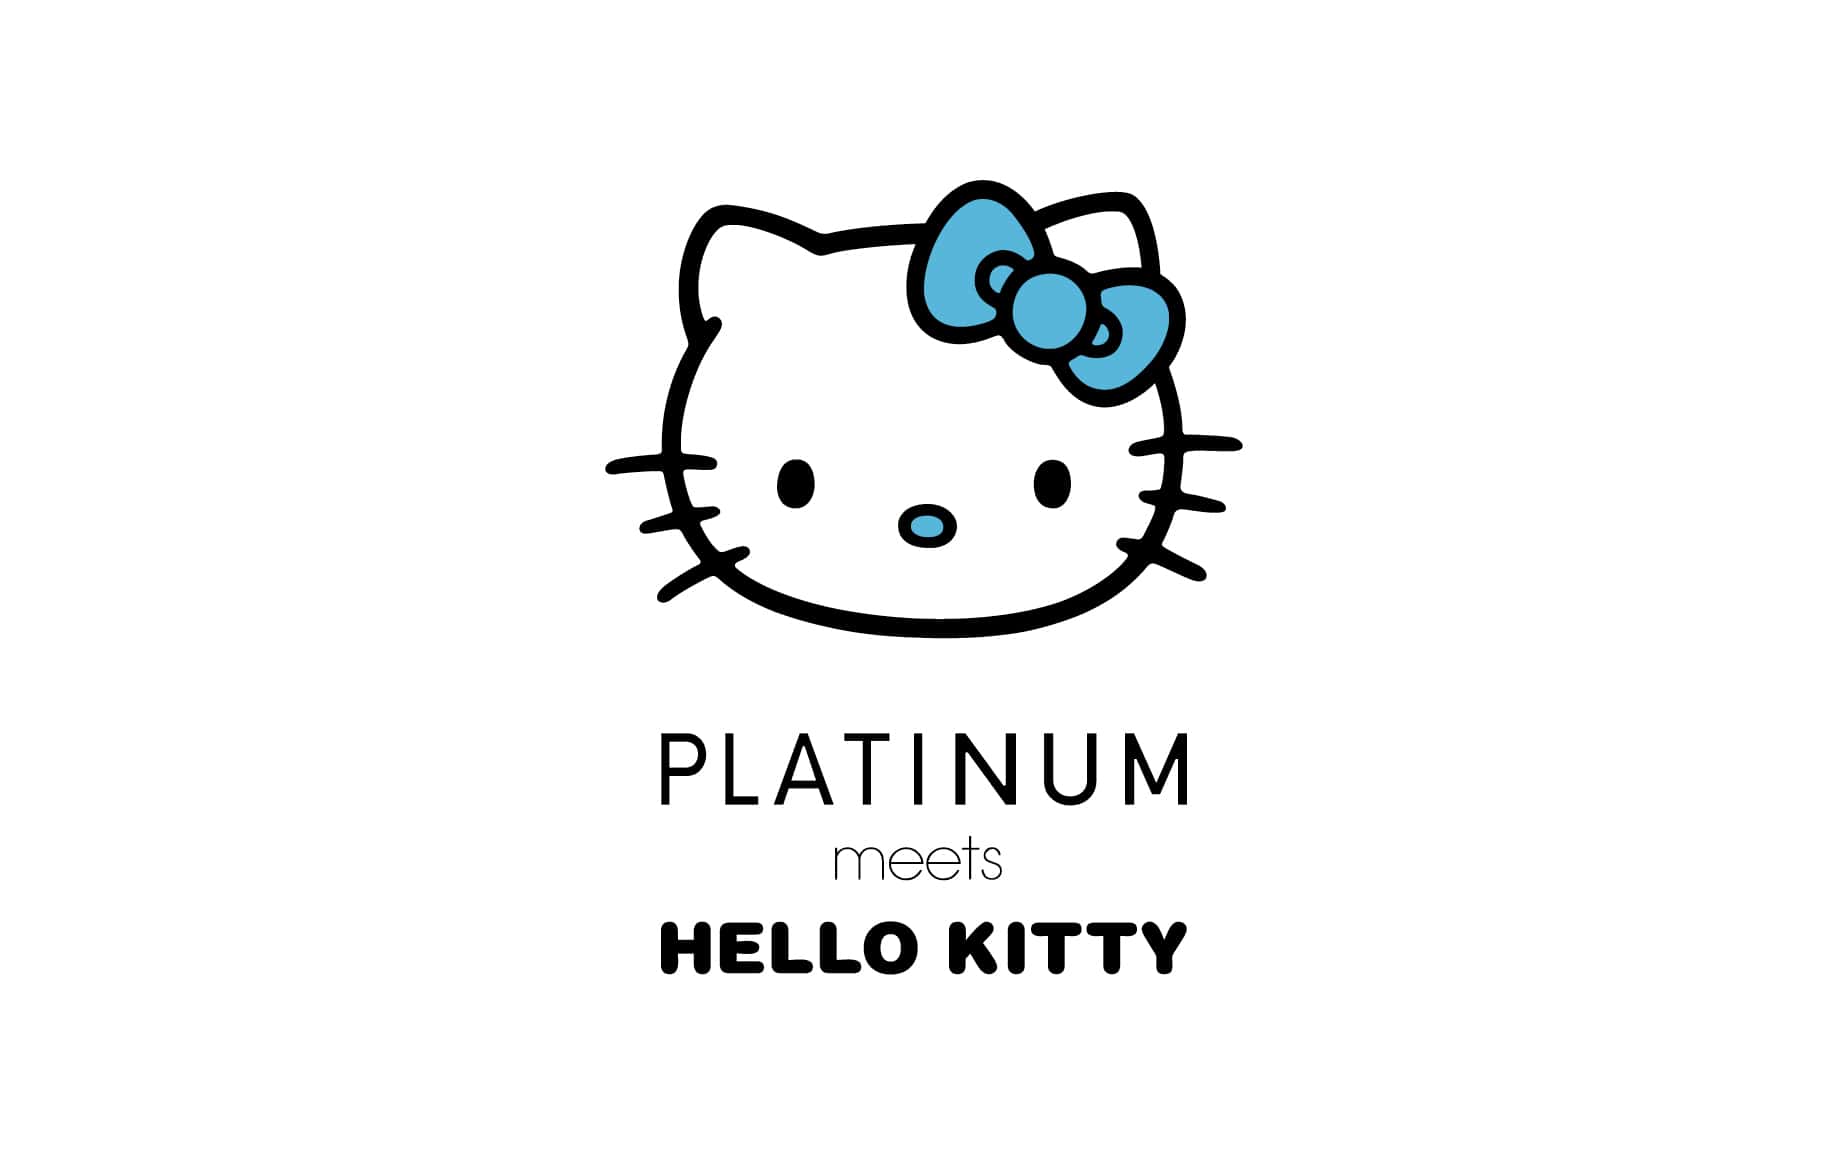 PLATINUM meets HELLO KITTY